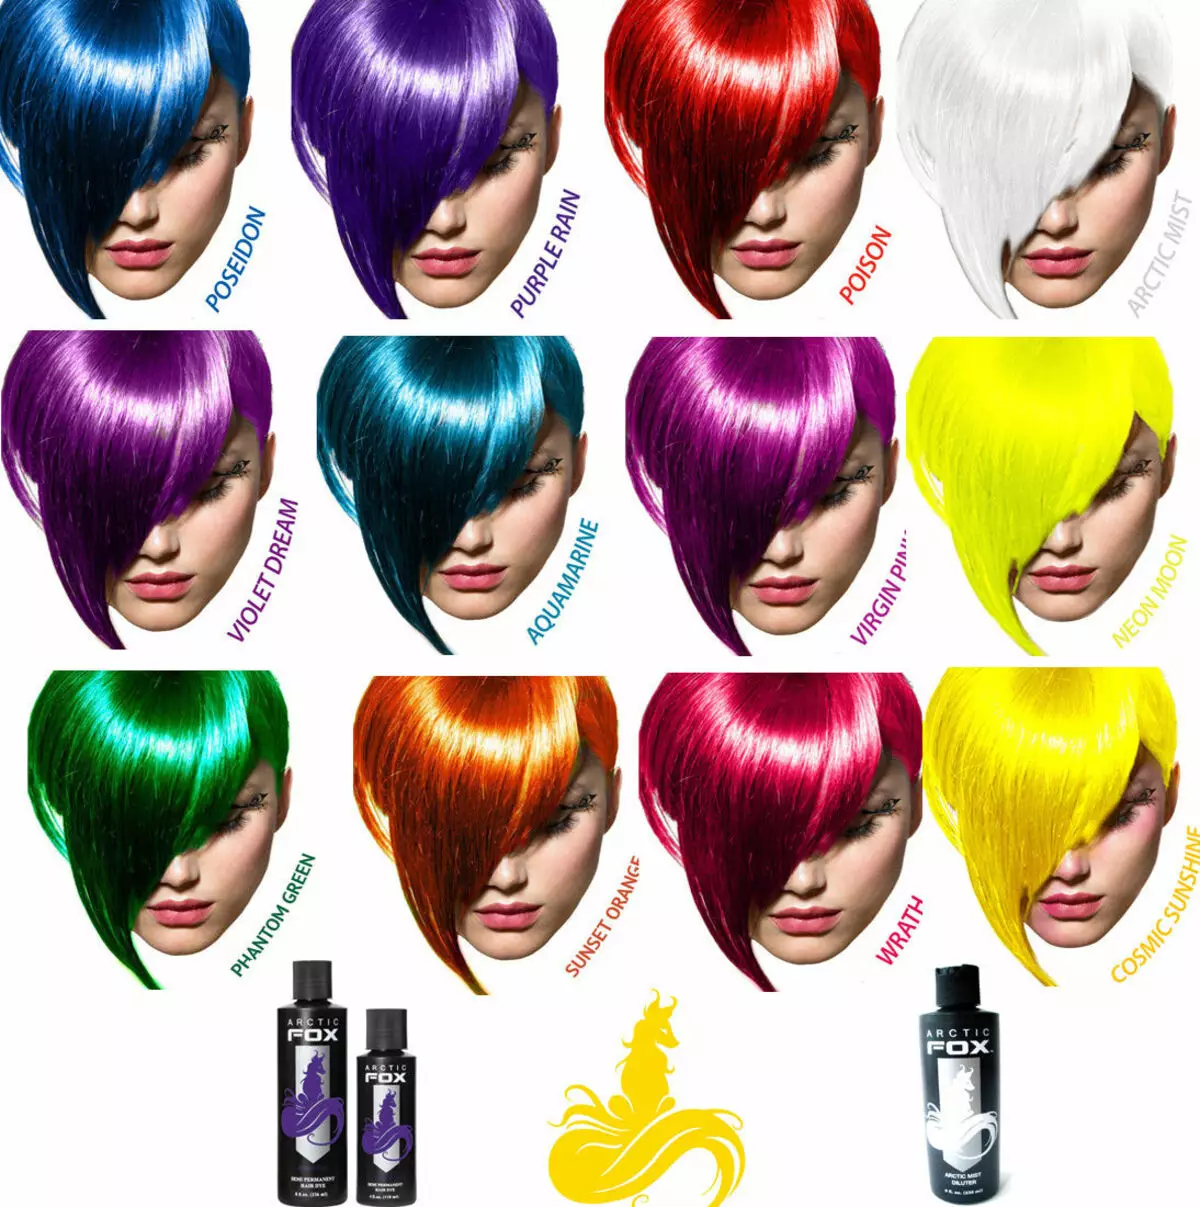 Dječja boja kose: Kako odabrati umivaonik s vodom i kako primijeniti set boja kose? 5456_14